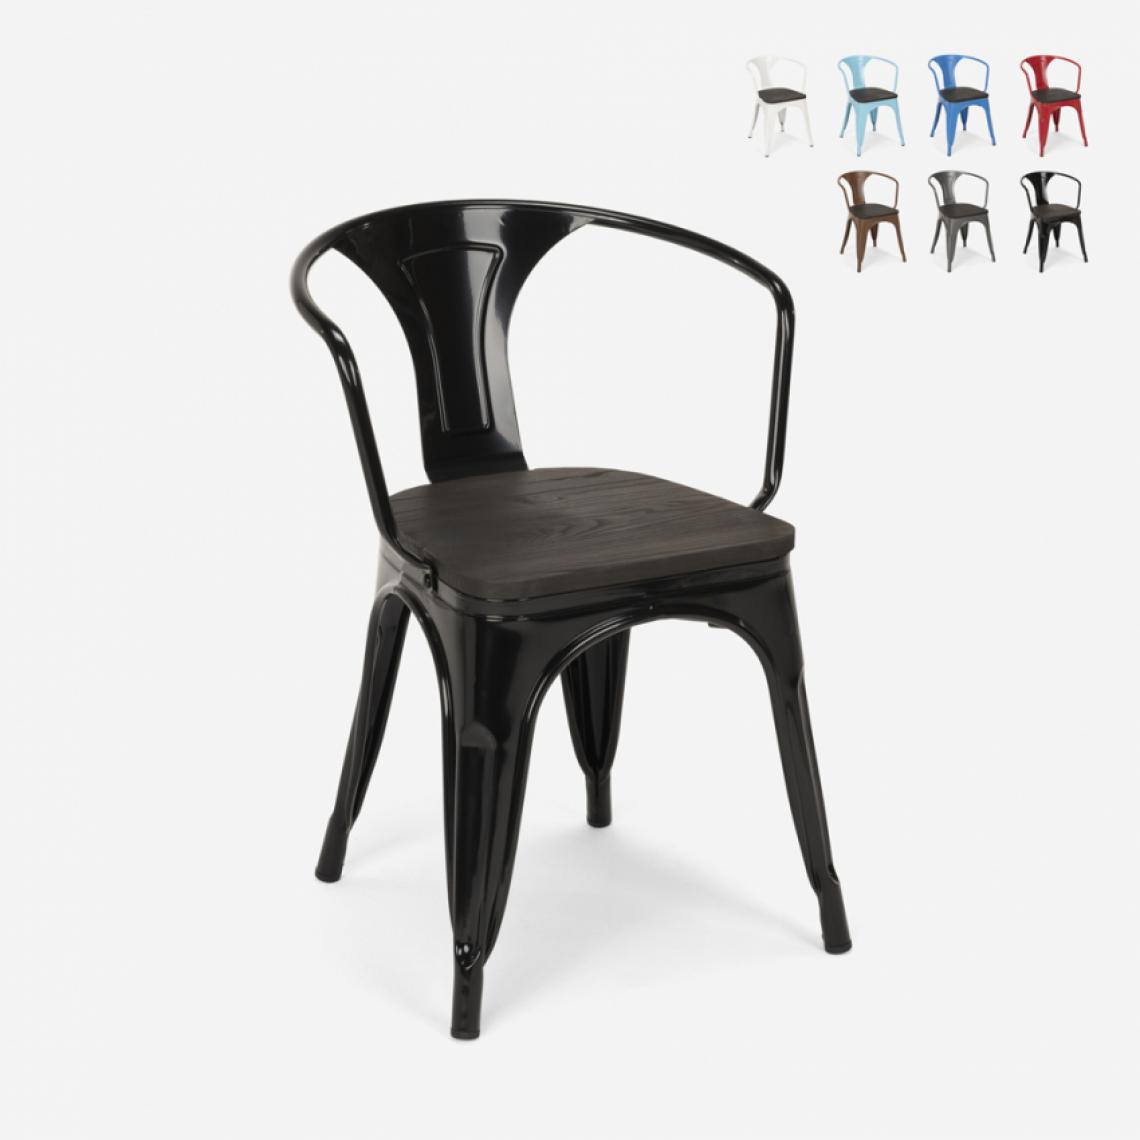 Ahd Amazing Home Design - Chaises design industriel en bois et métal de style Tolix Cuisines de bar Steel Wood Arm, Couleur: Noir - Chaises